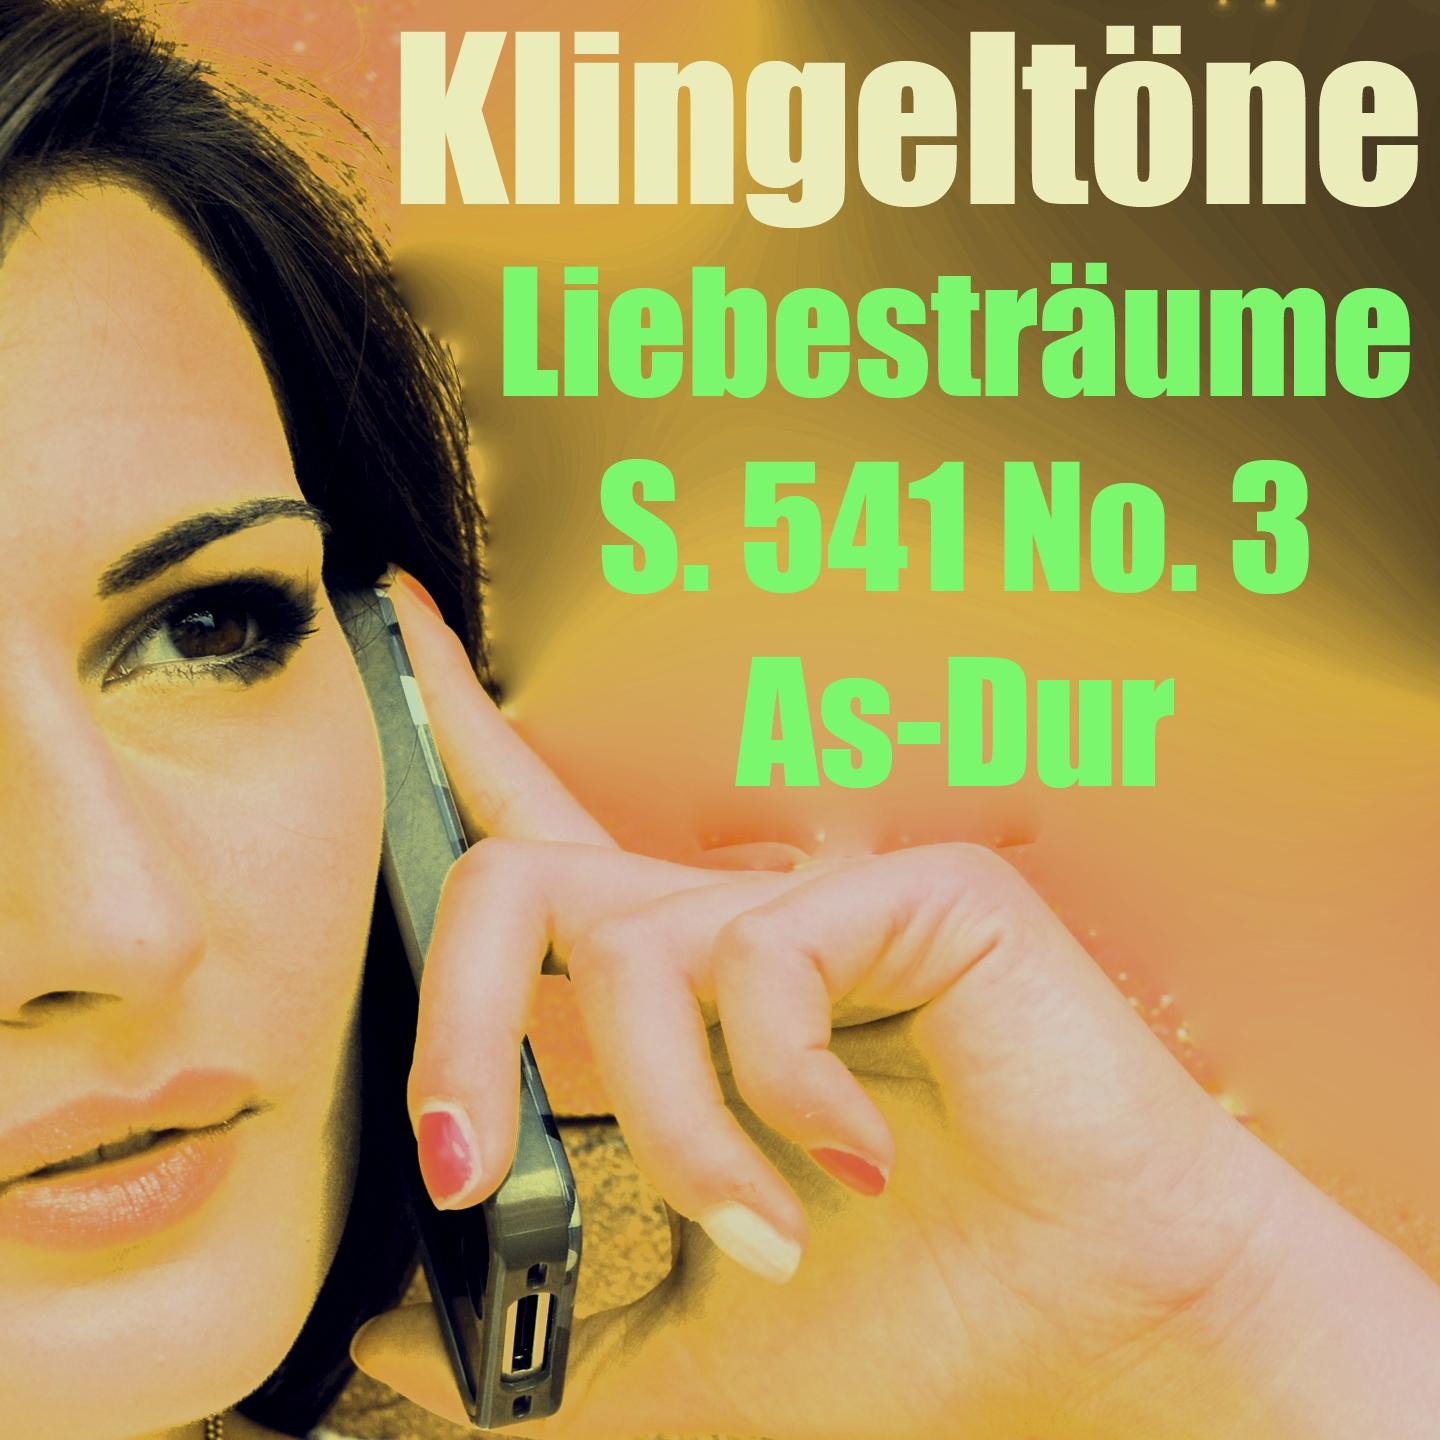 Постер альбома Liebesträume Klingelton S. 541 No. 3 As-Dur Oh Lieb so lang du lieben kannst